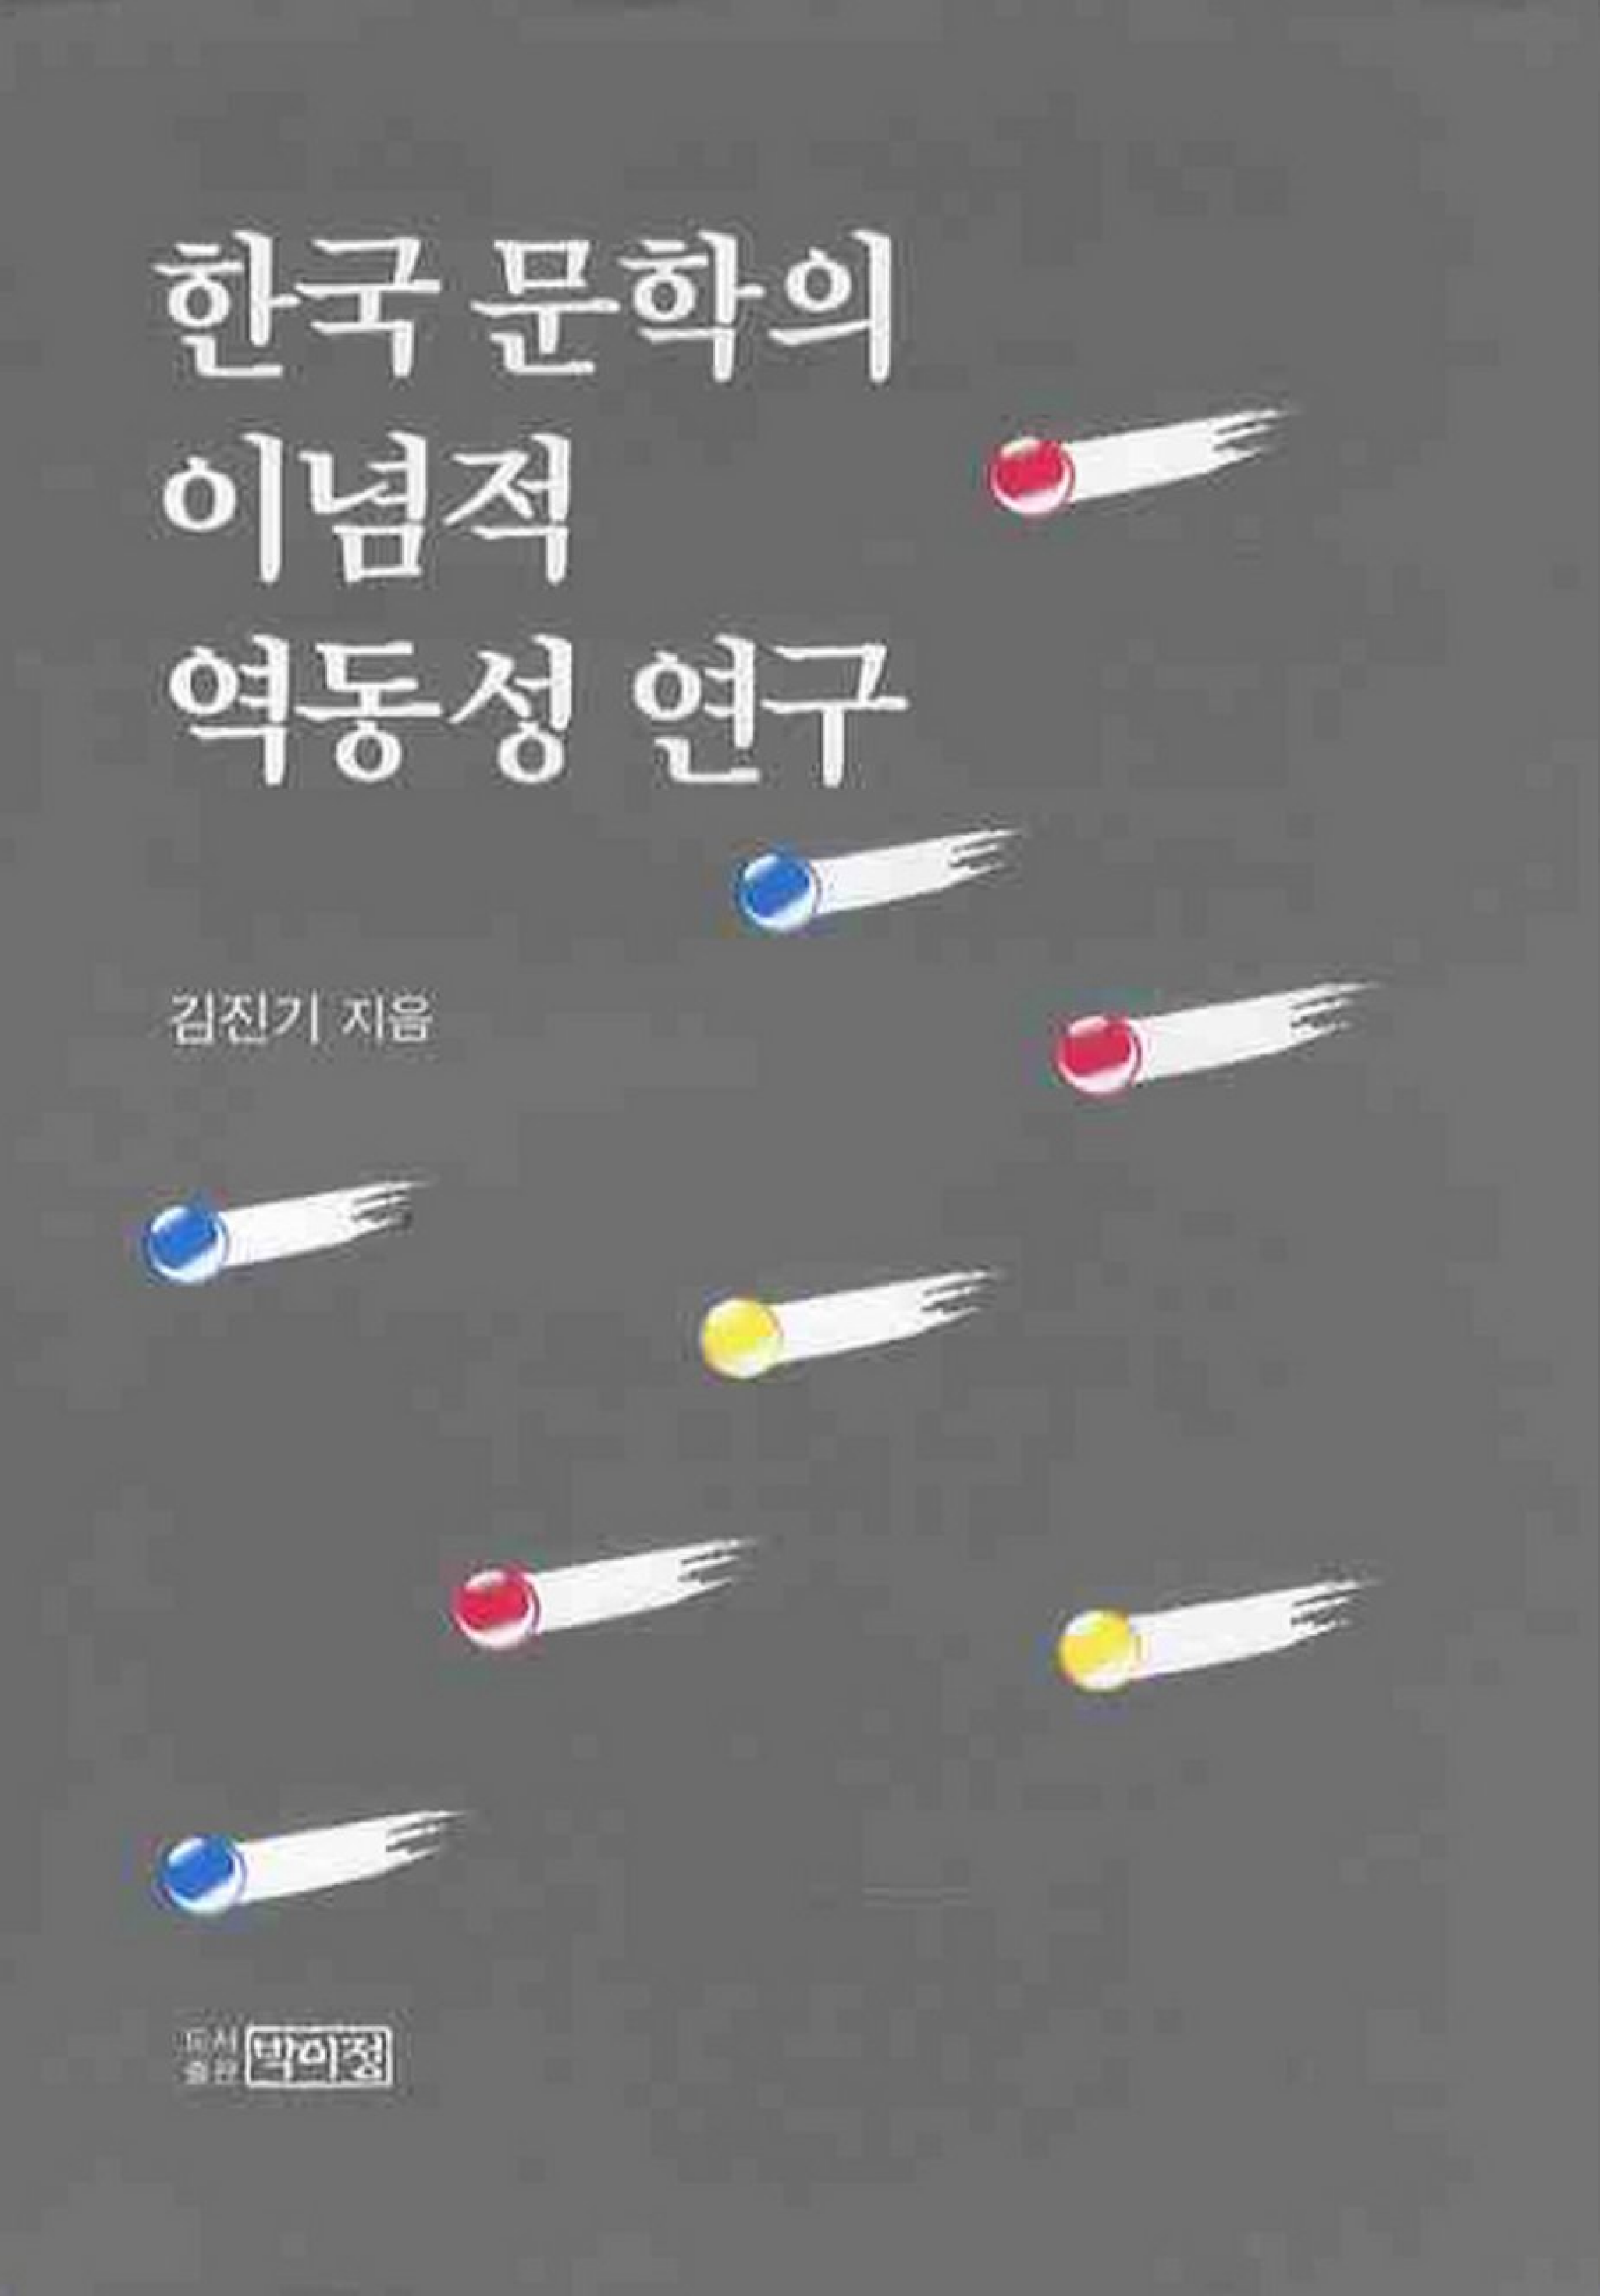 한국 문학의 이념적 역동성 연구